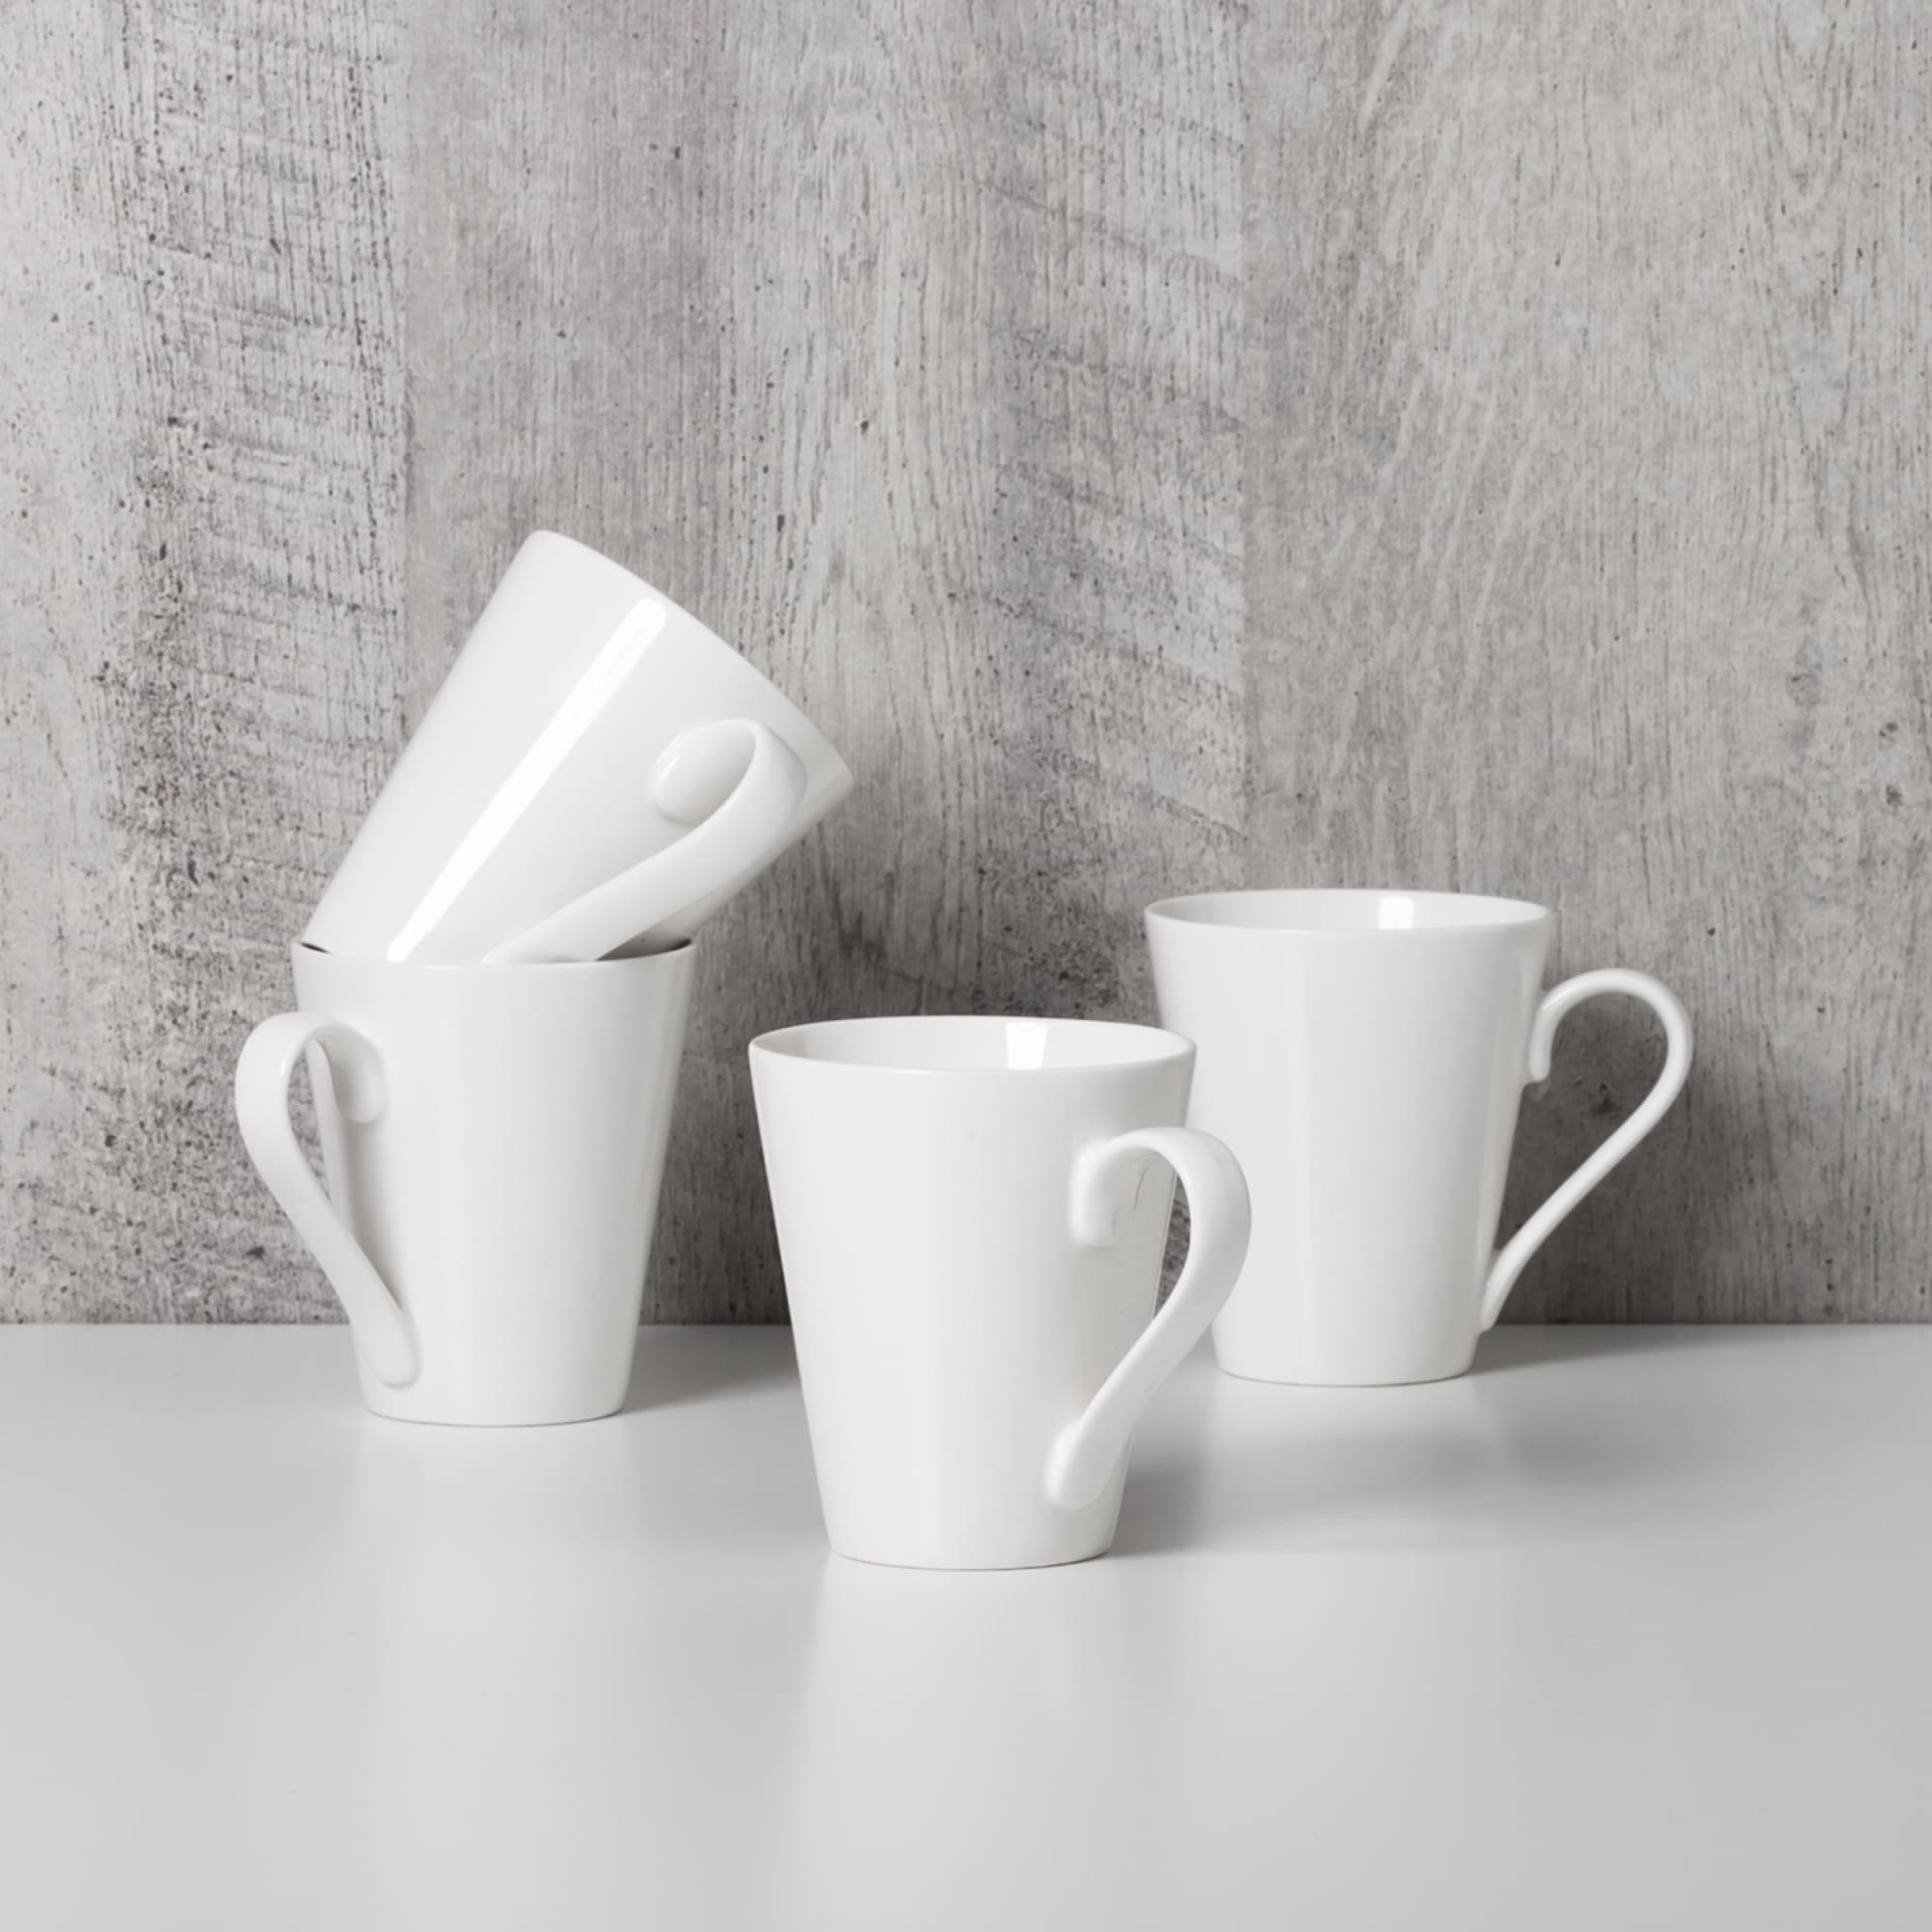 Salisbury & Co Classic Conical Mug 320ml Set of 4 White Image 2